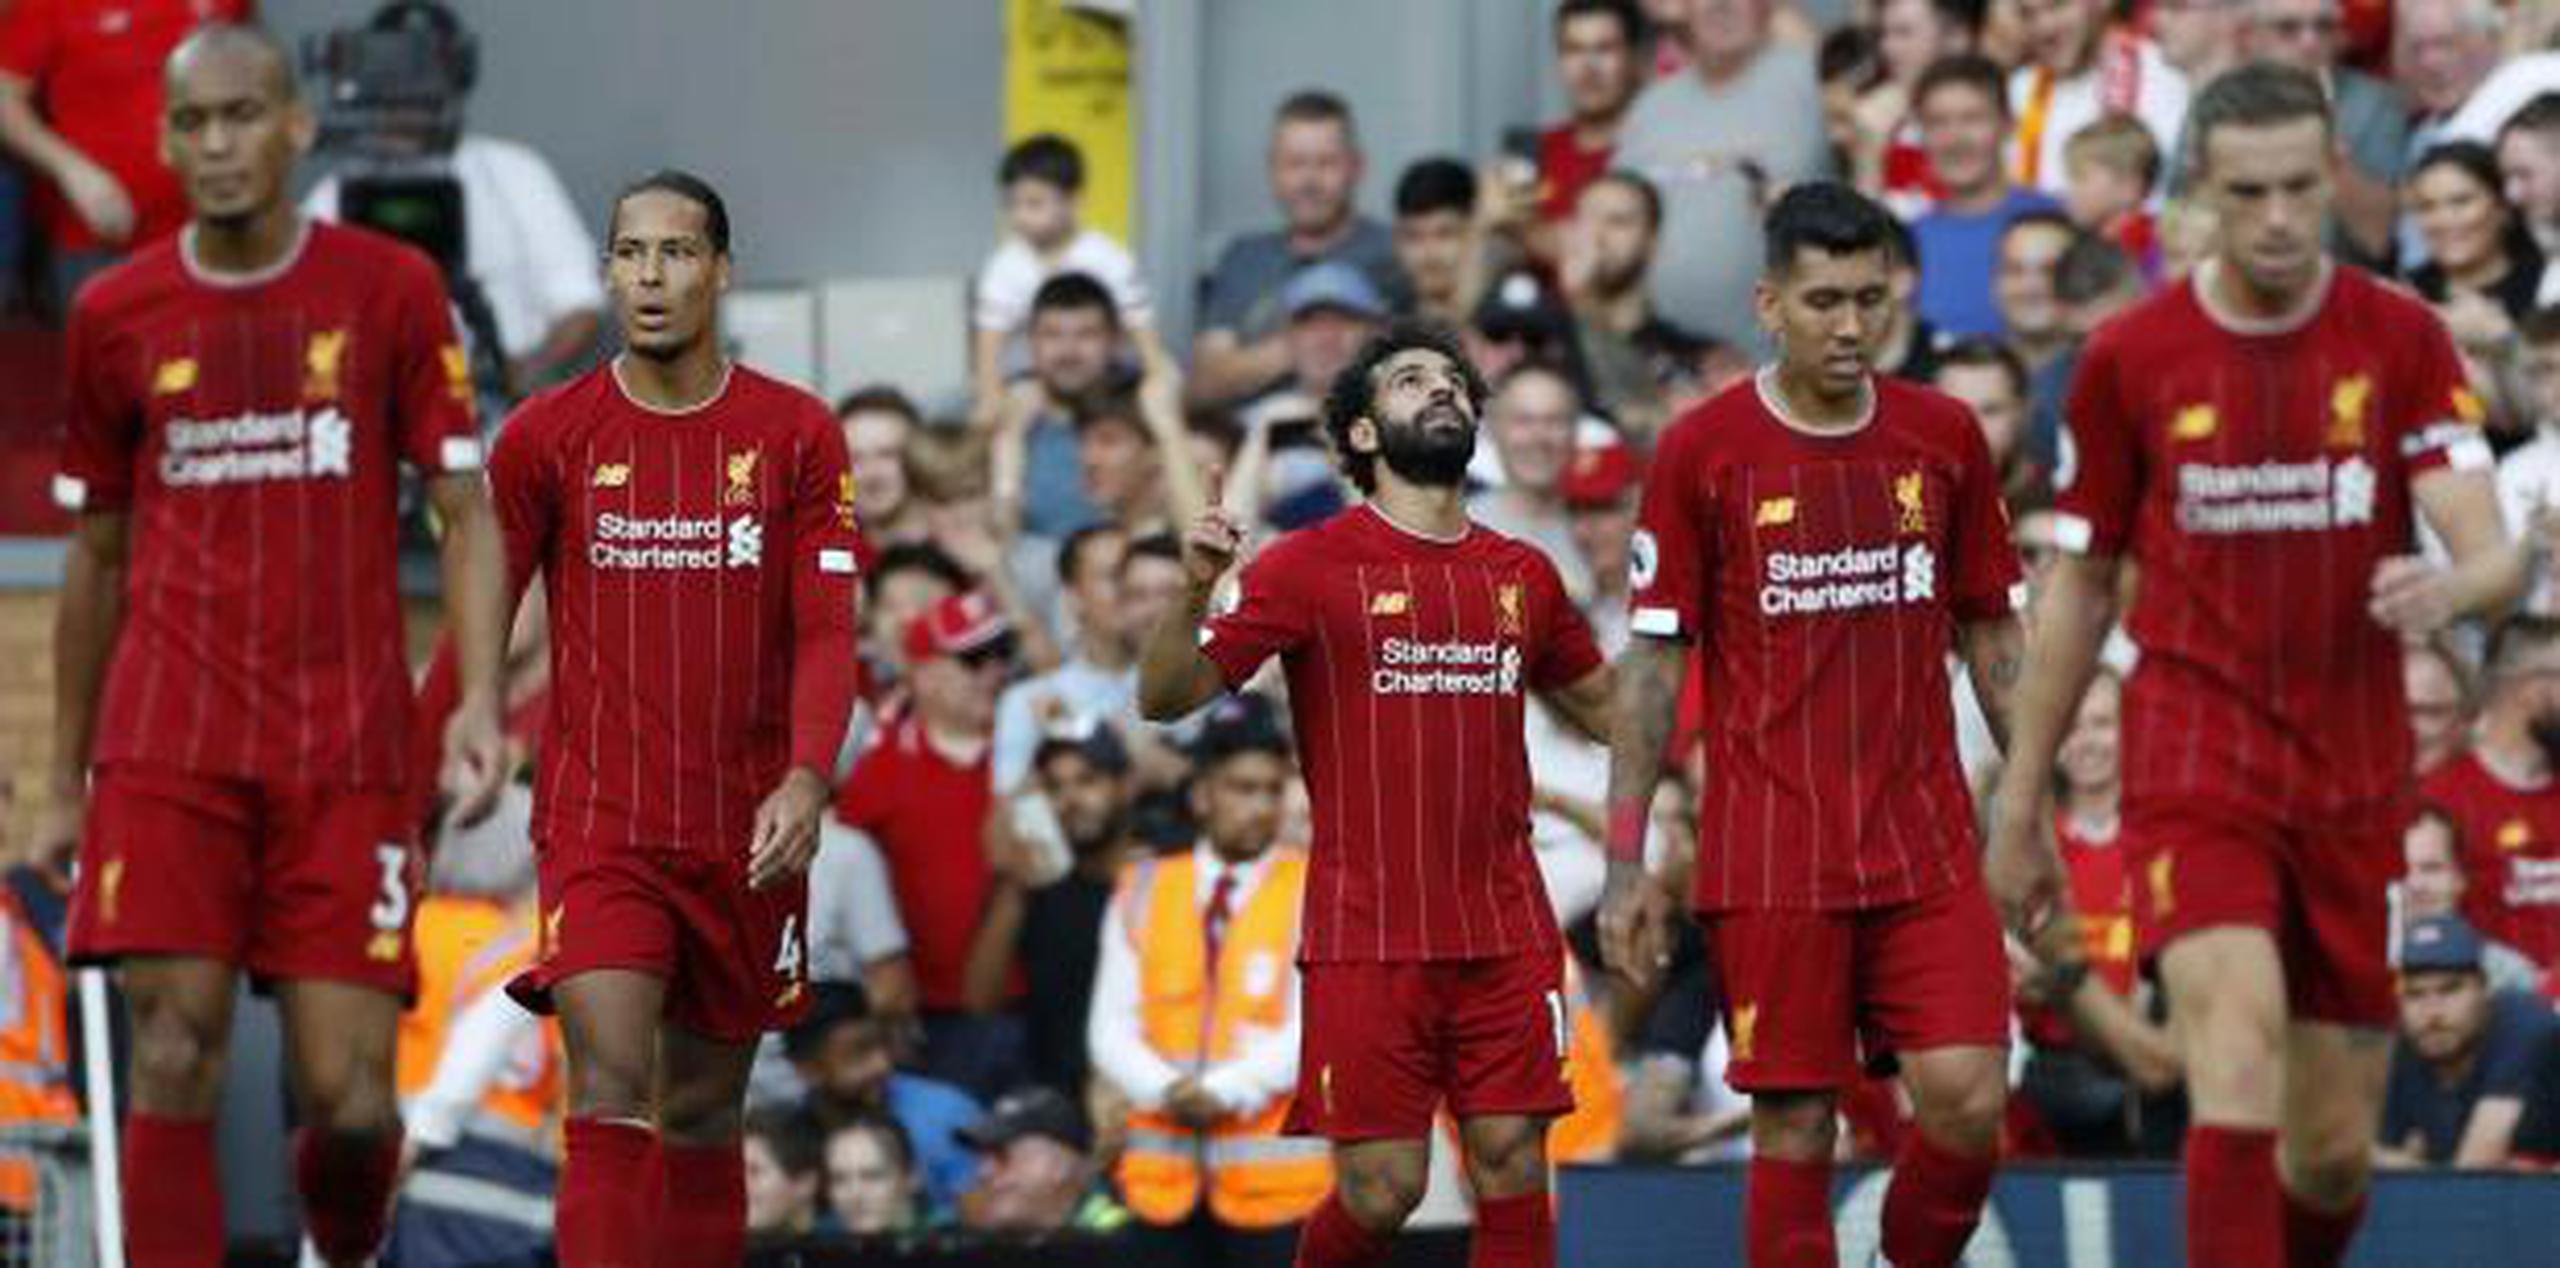 El onceno inglés Liverpool ganó la final en junio. (AP / Rui Vieira)